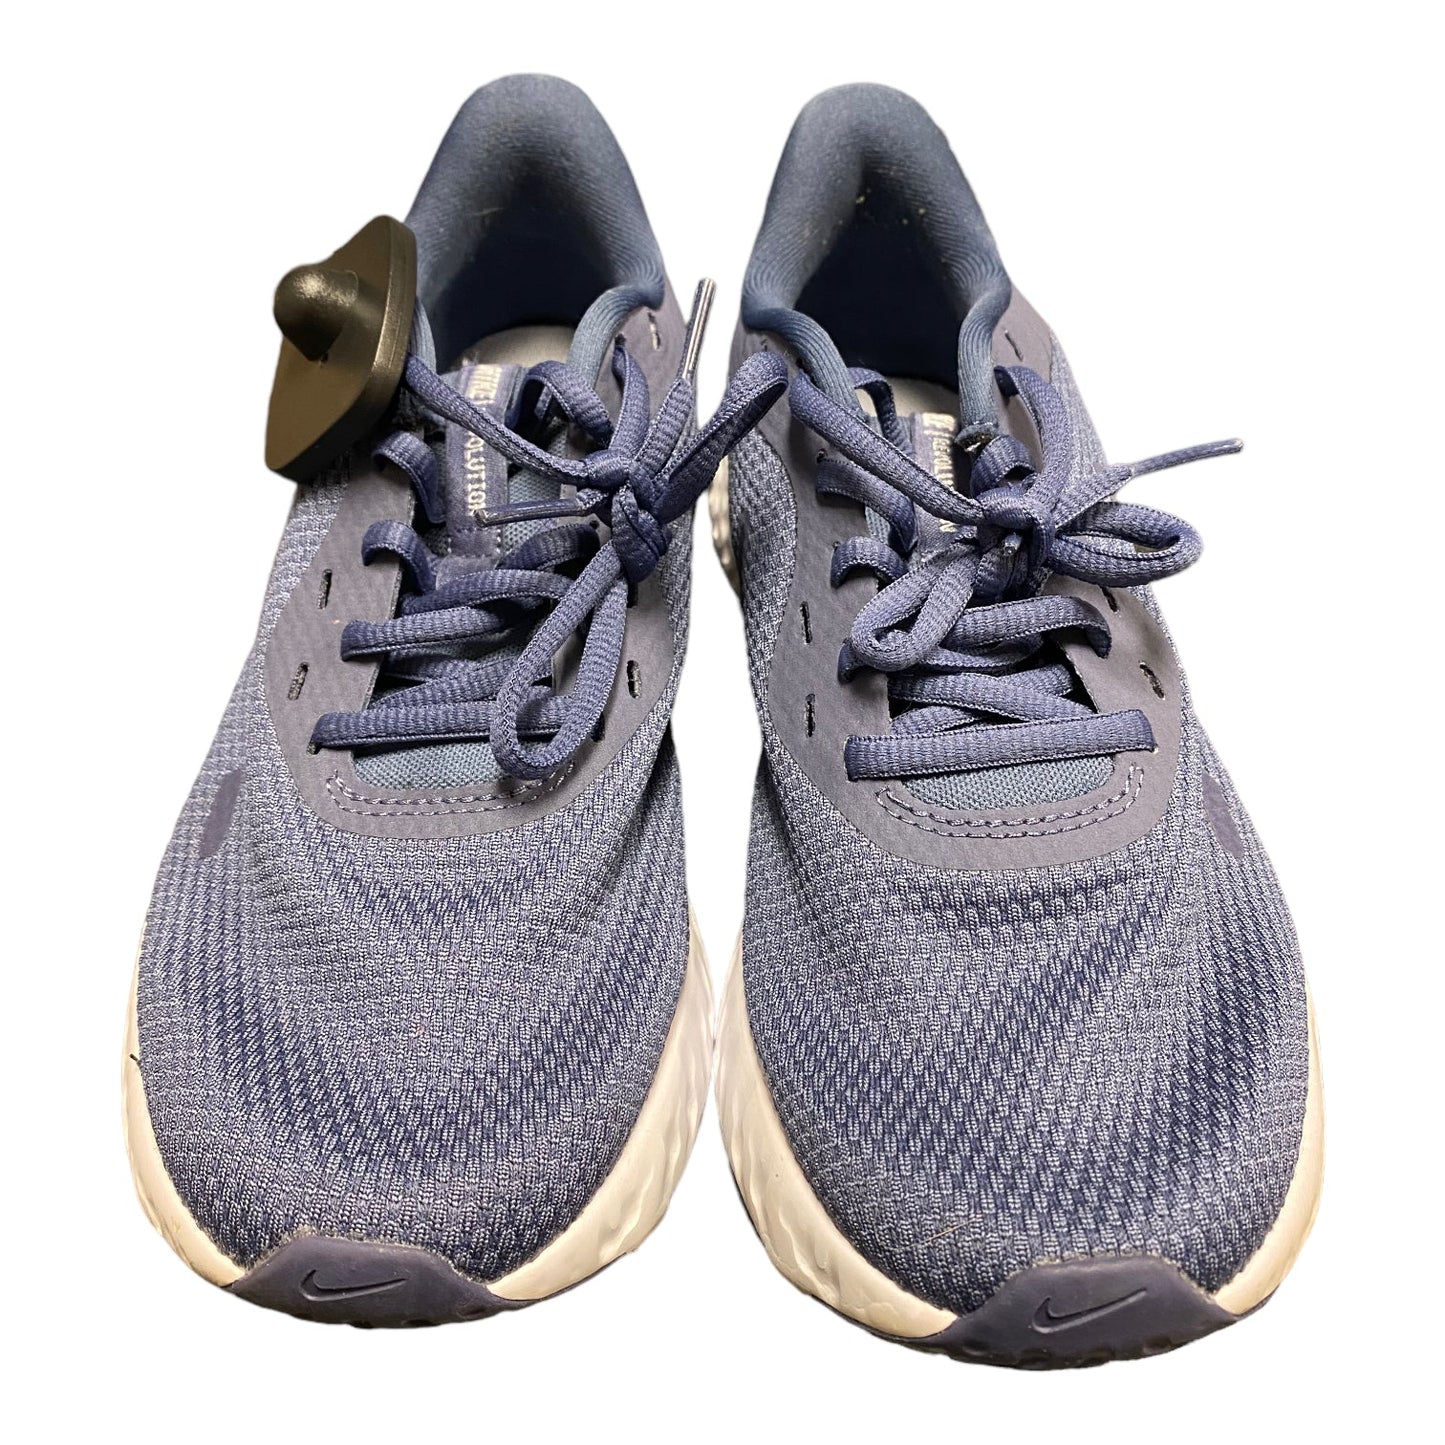 Blue Shoes Athletic Nike, Size 7